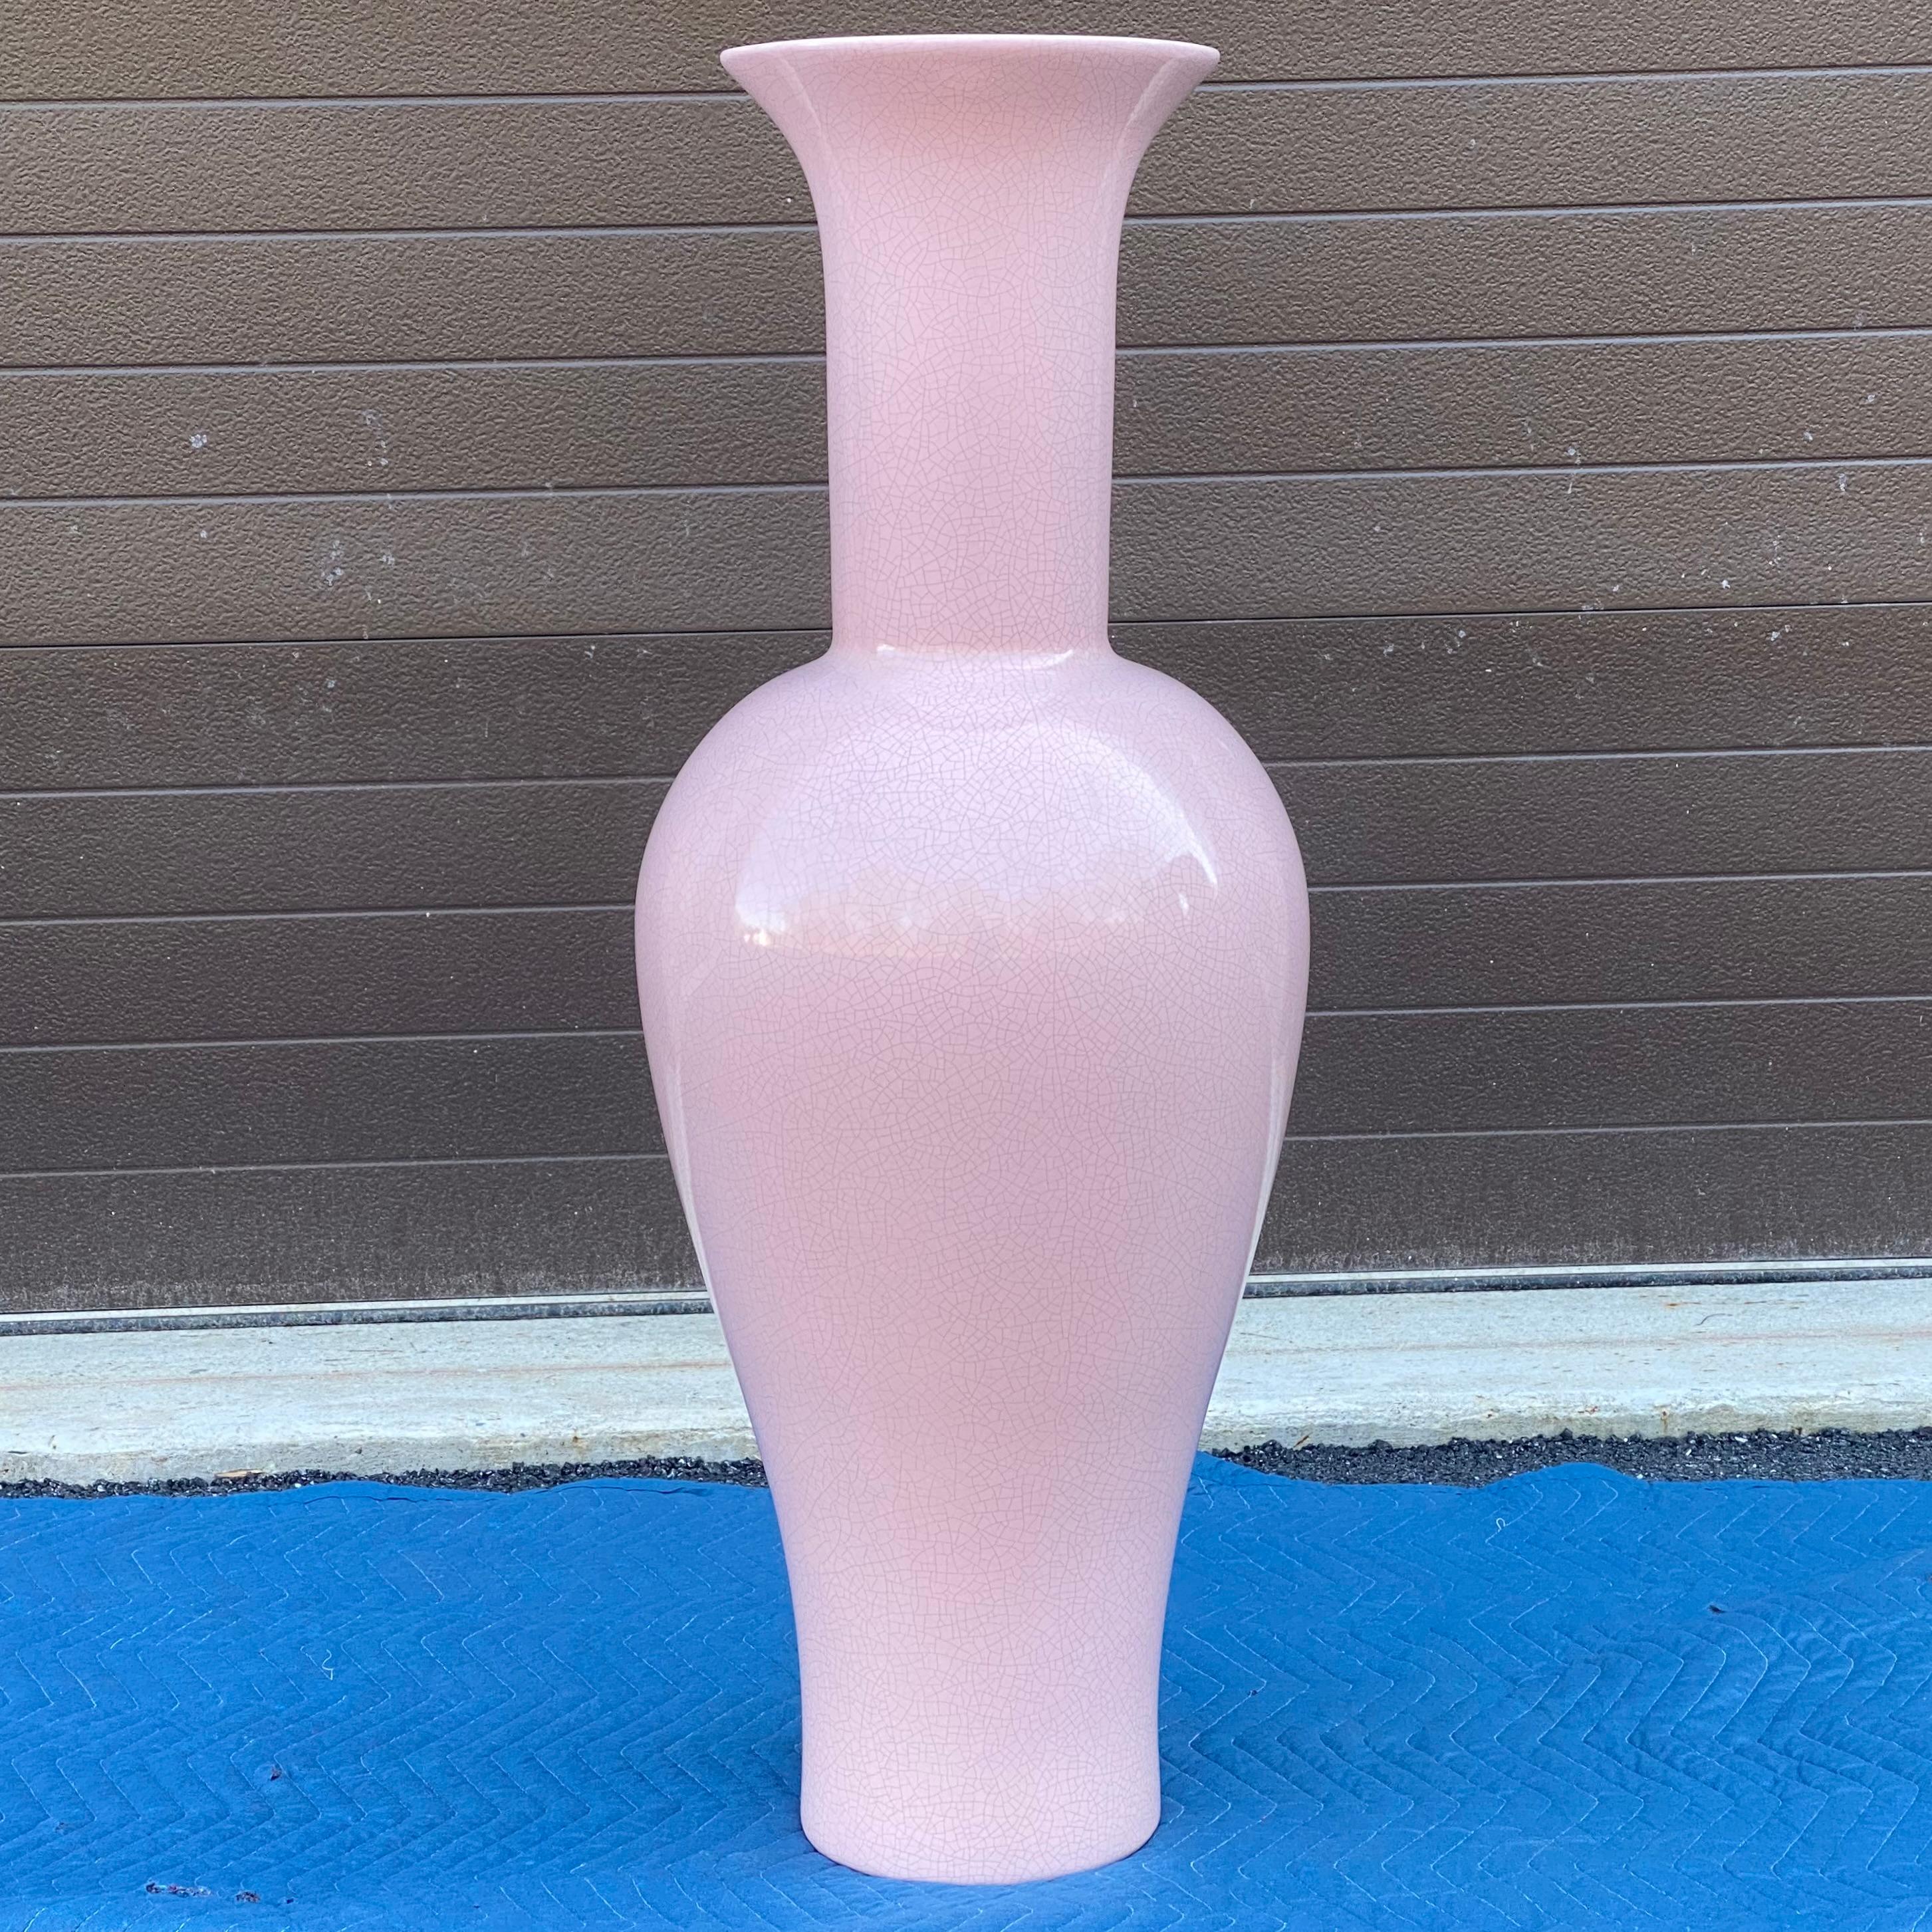 Un fantastique vase en céramique fait à la main et cuit dans une glaçure rose craquelée par l'entreprise de poterie californienne Jaru.